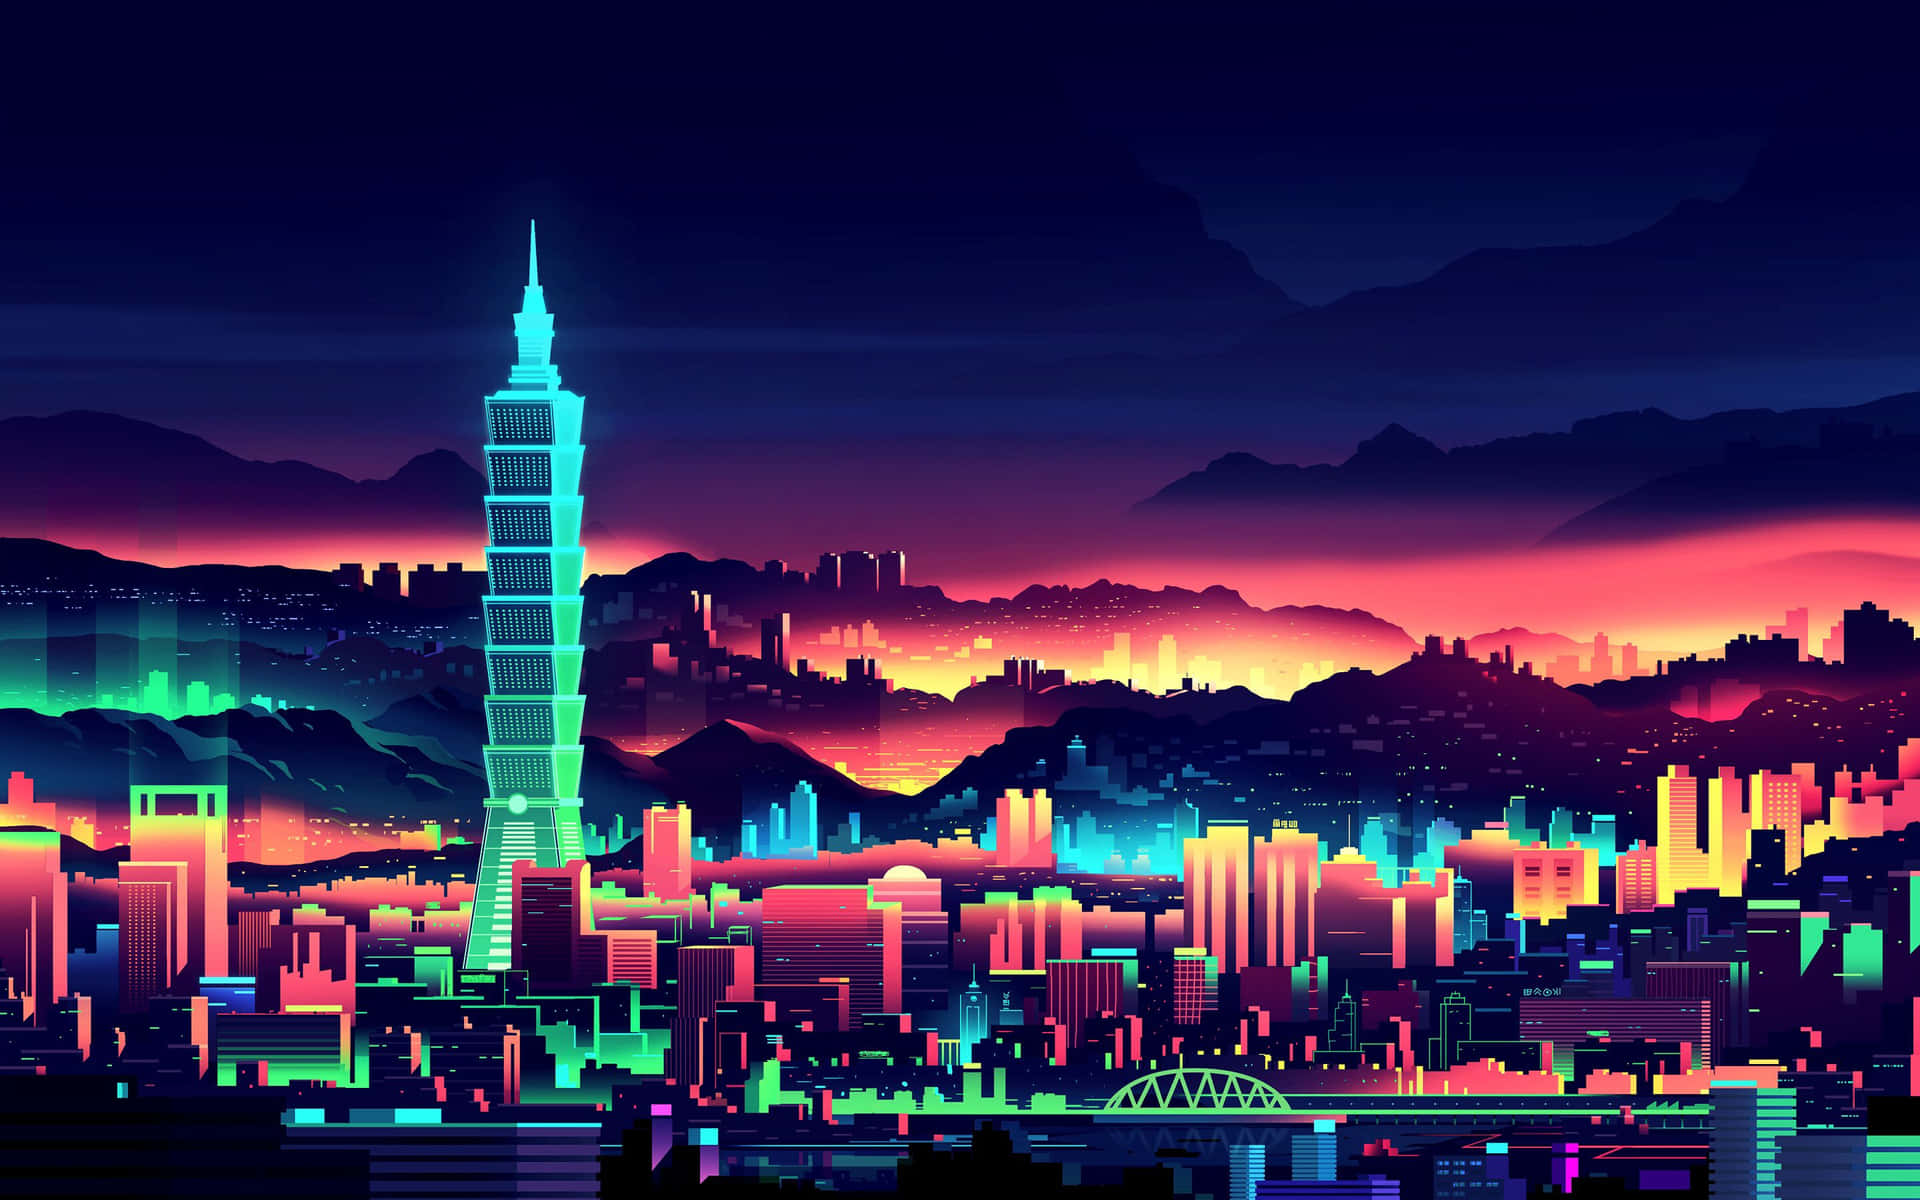 A Futuristic Cyberpunk Pixel Art Imaginary Scene Background